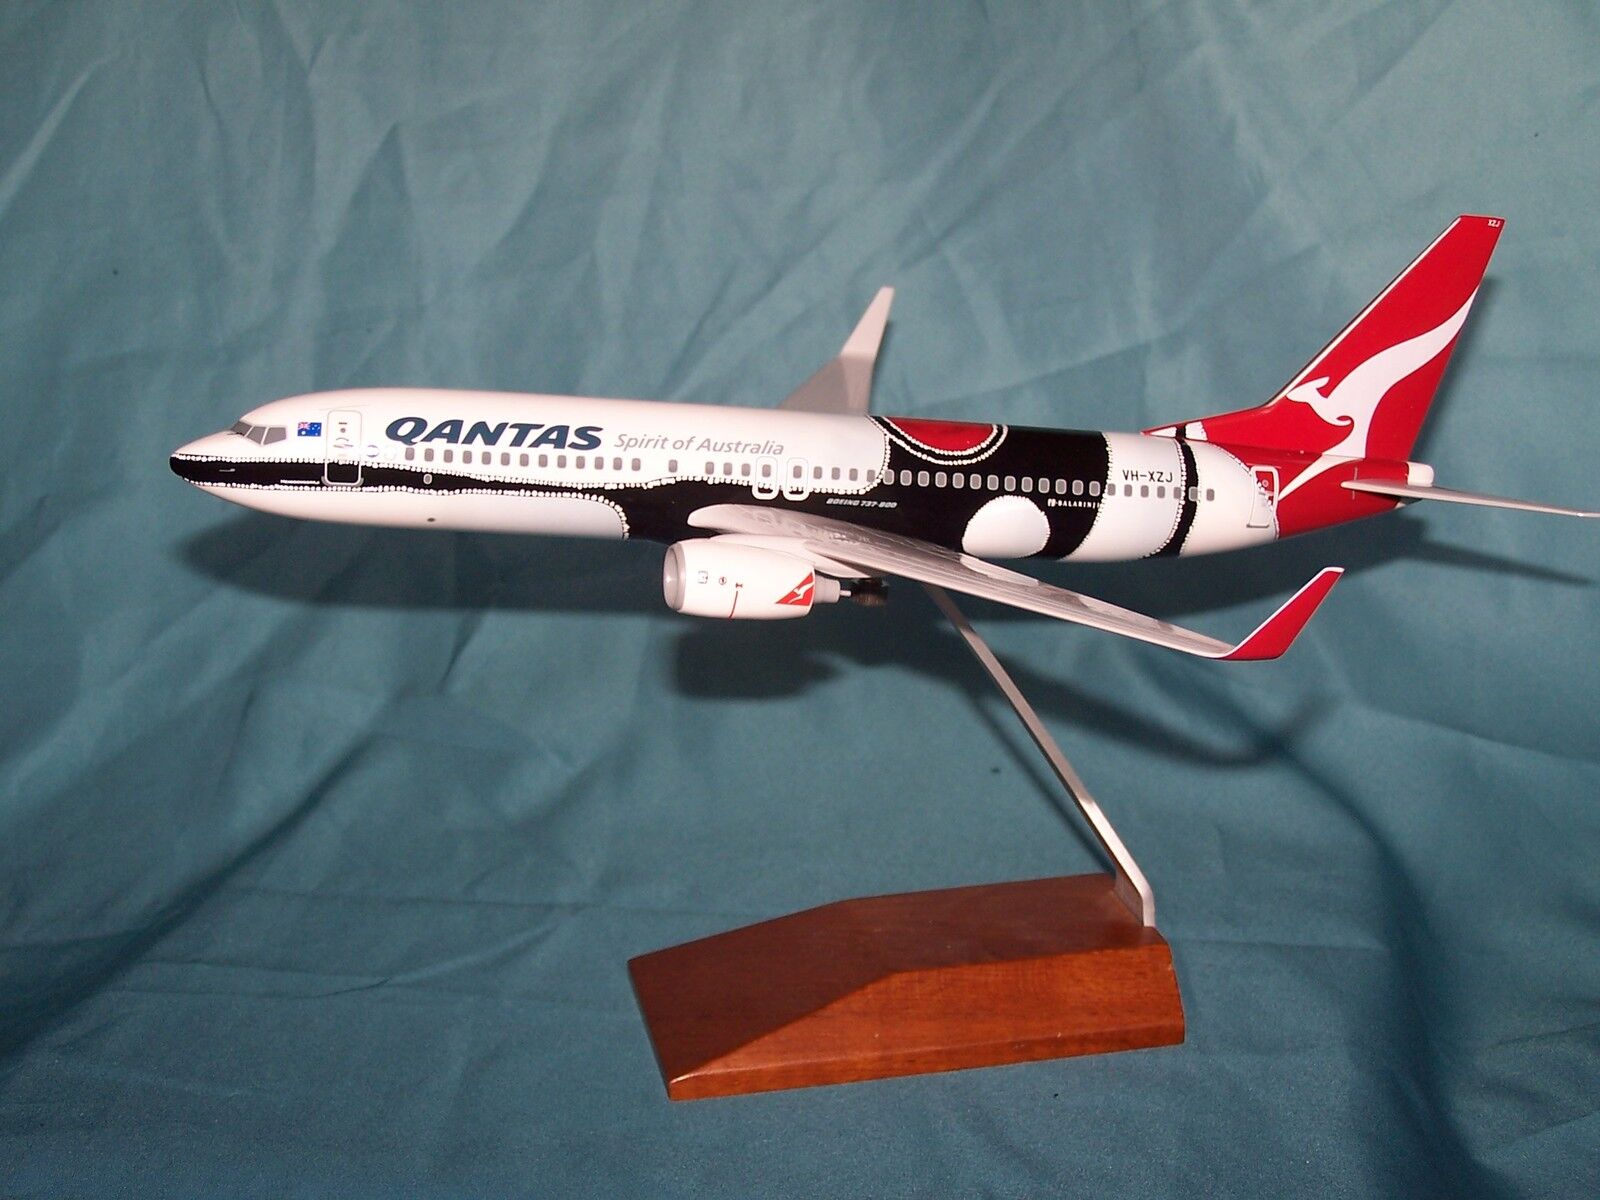 QANTAS AIRLINES MENDOOWOORRJI  737-800 1:130 DESK MODEL SKYMARKS - EXECUTIVE